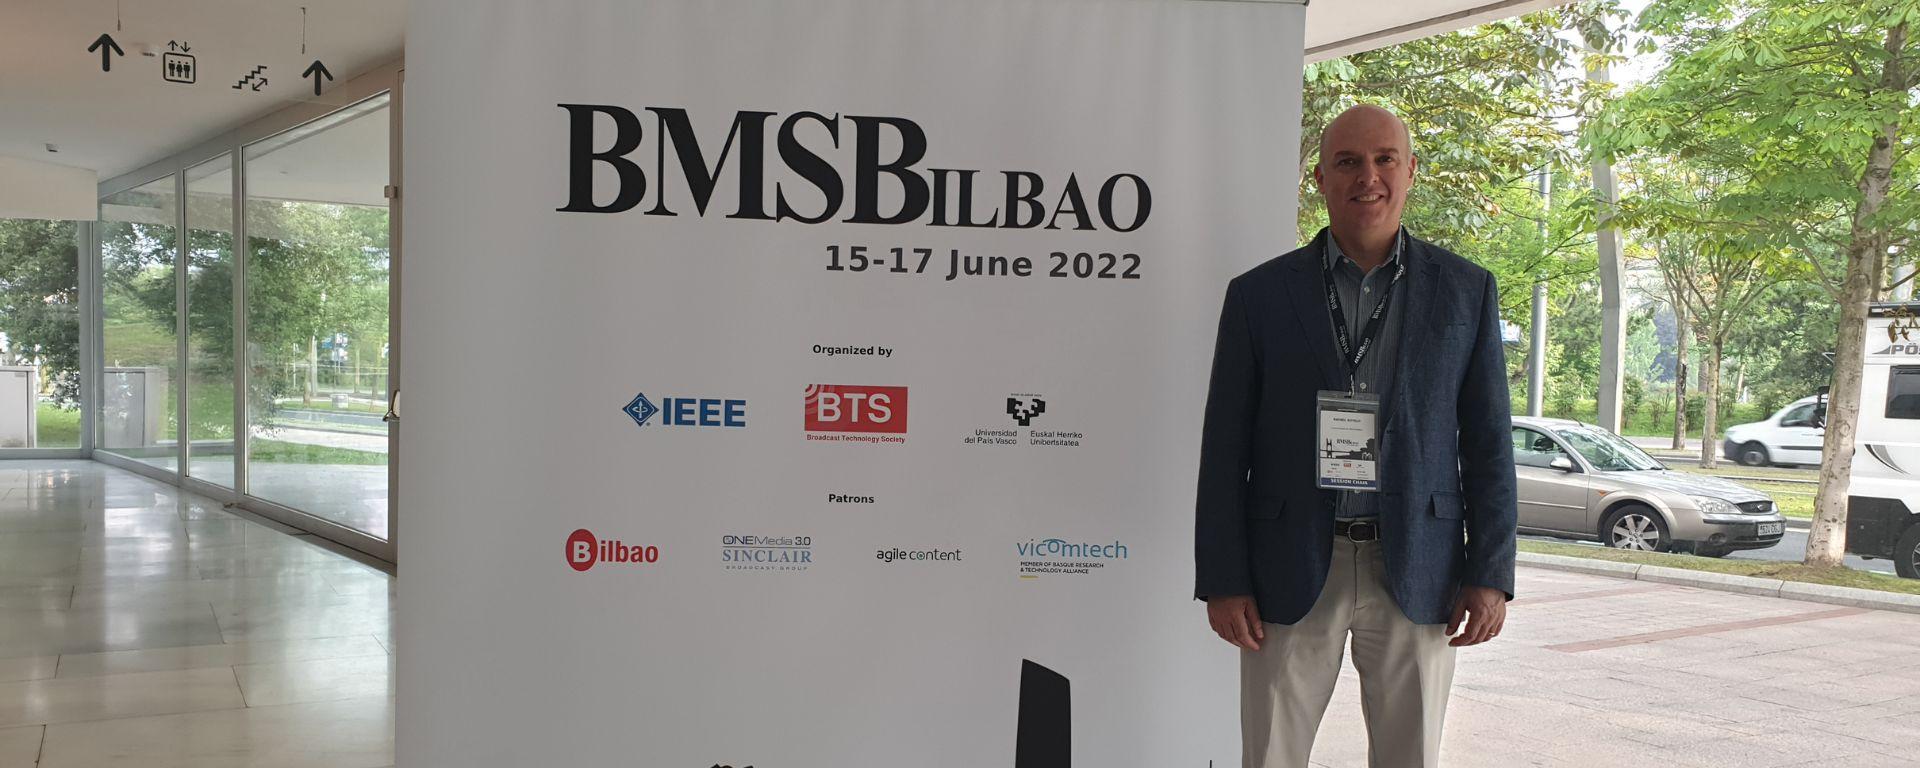 Sotelo realiza presentación de Paper en IEEE BMSB